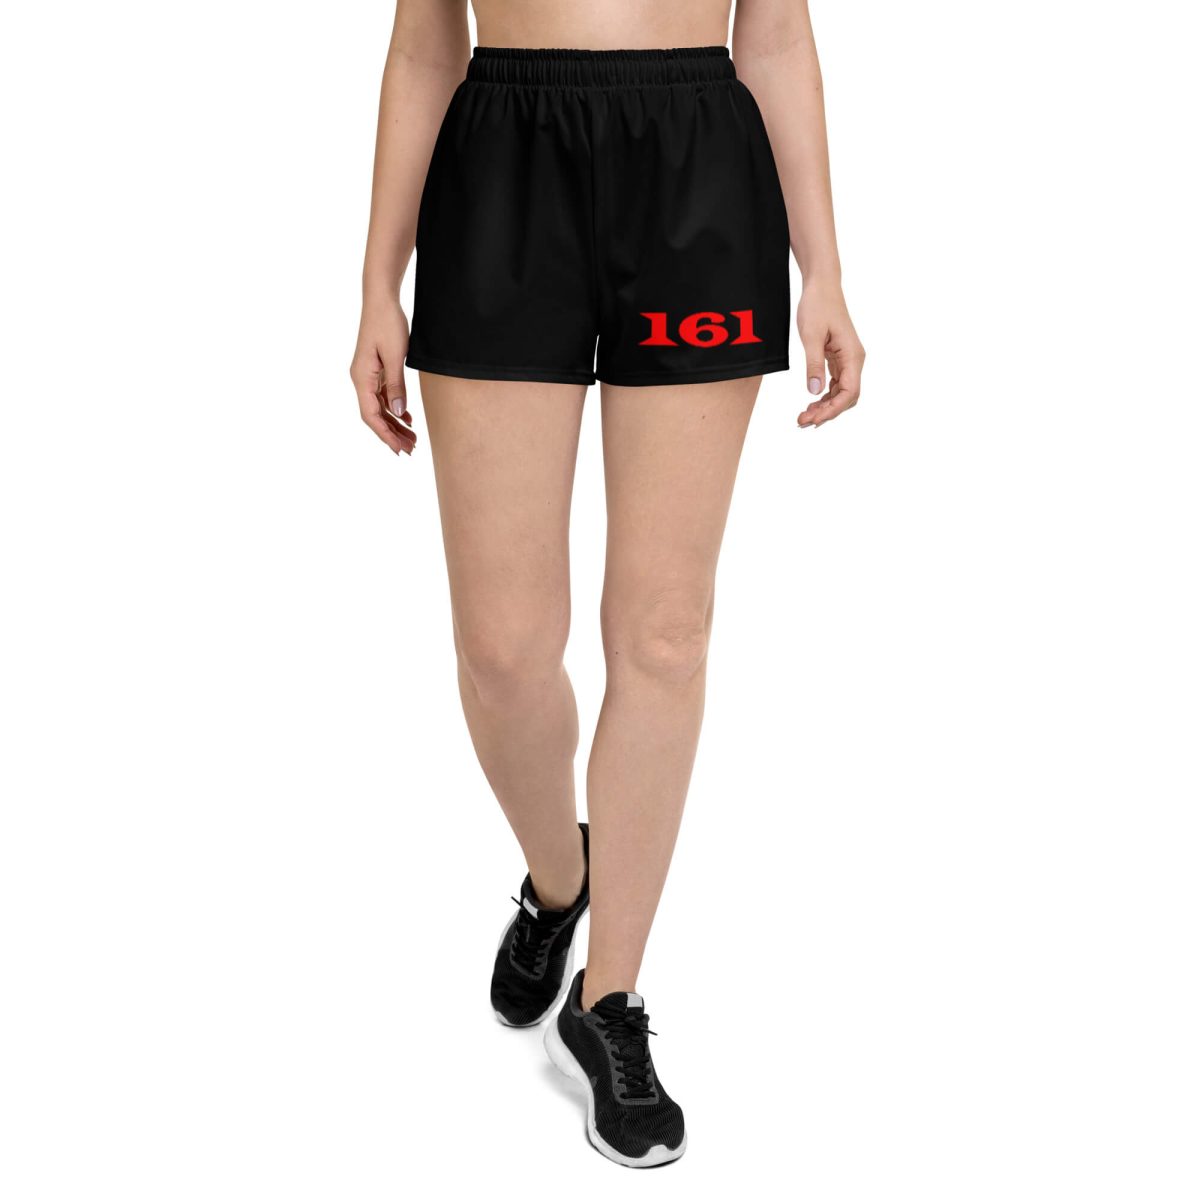 161 AFA Red Women's Shorts